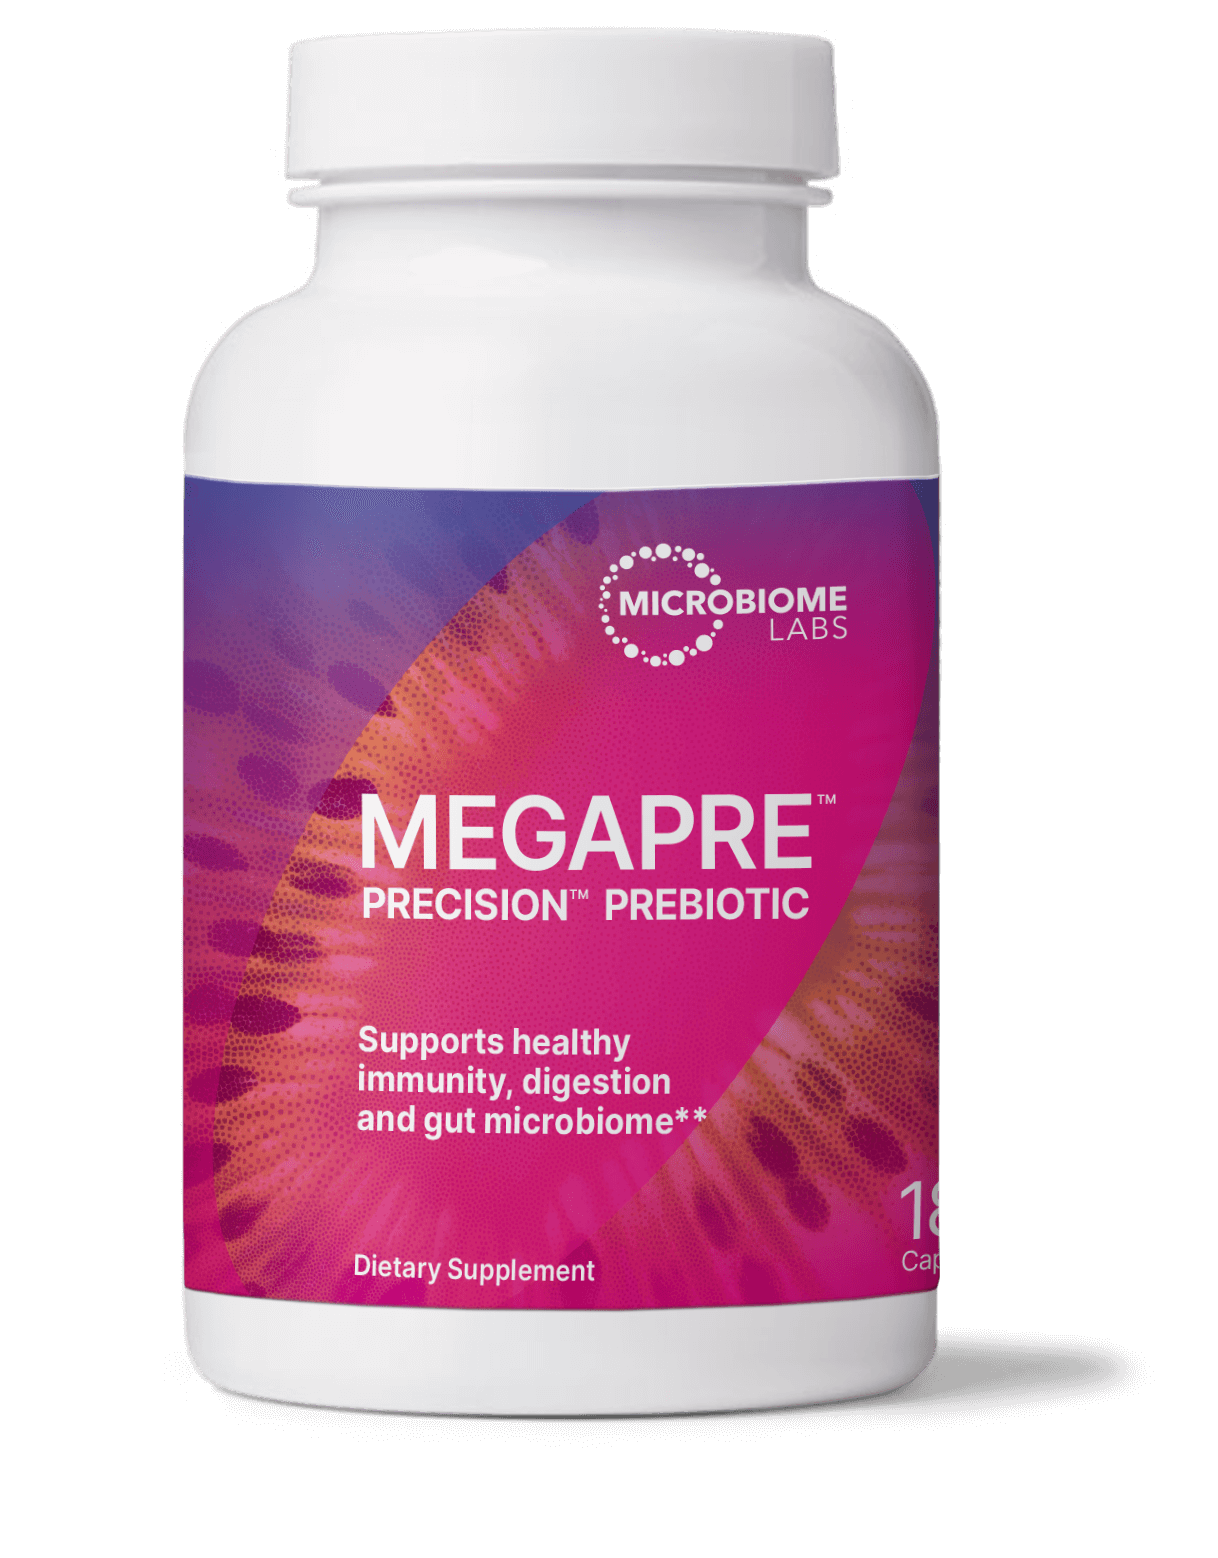 MegaPrebiotic